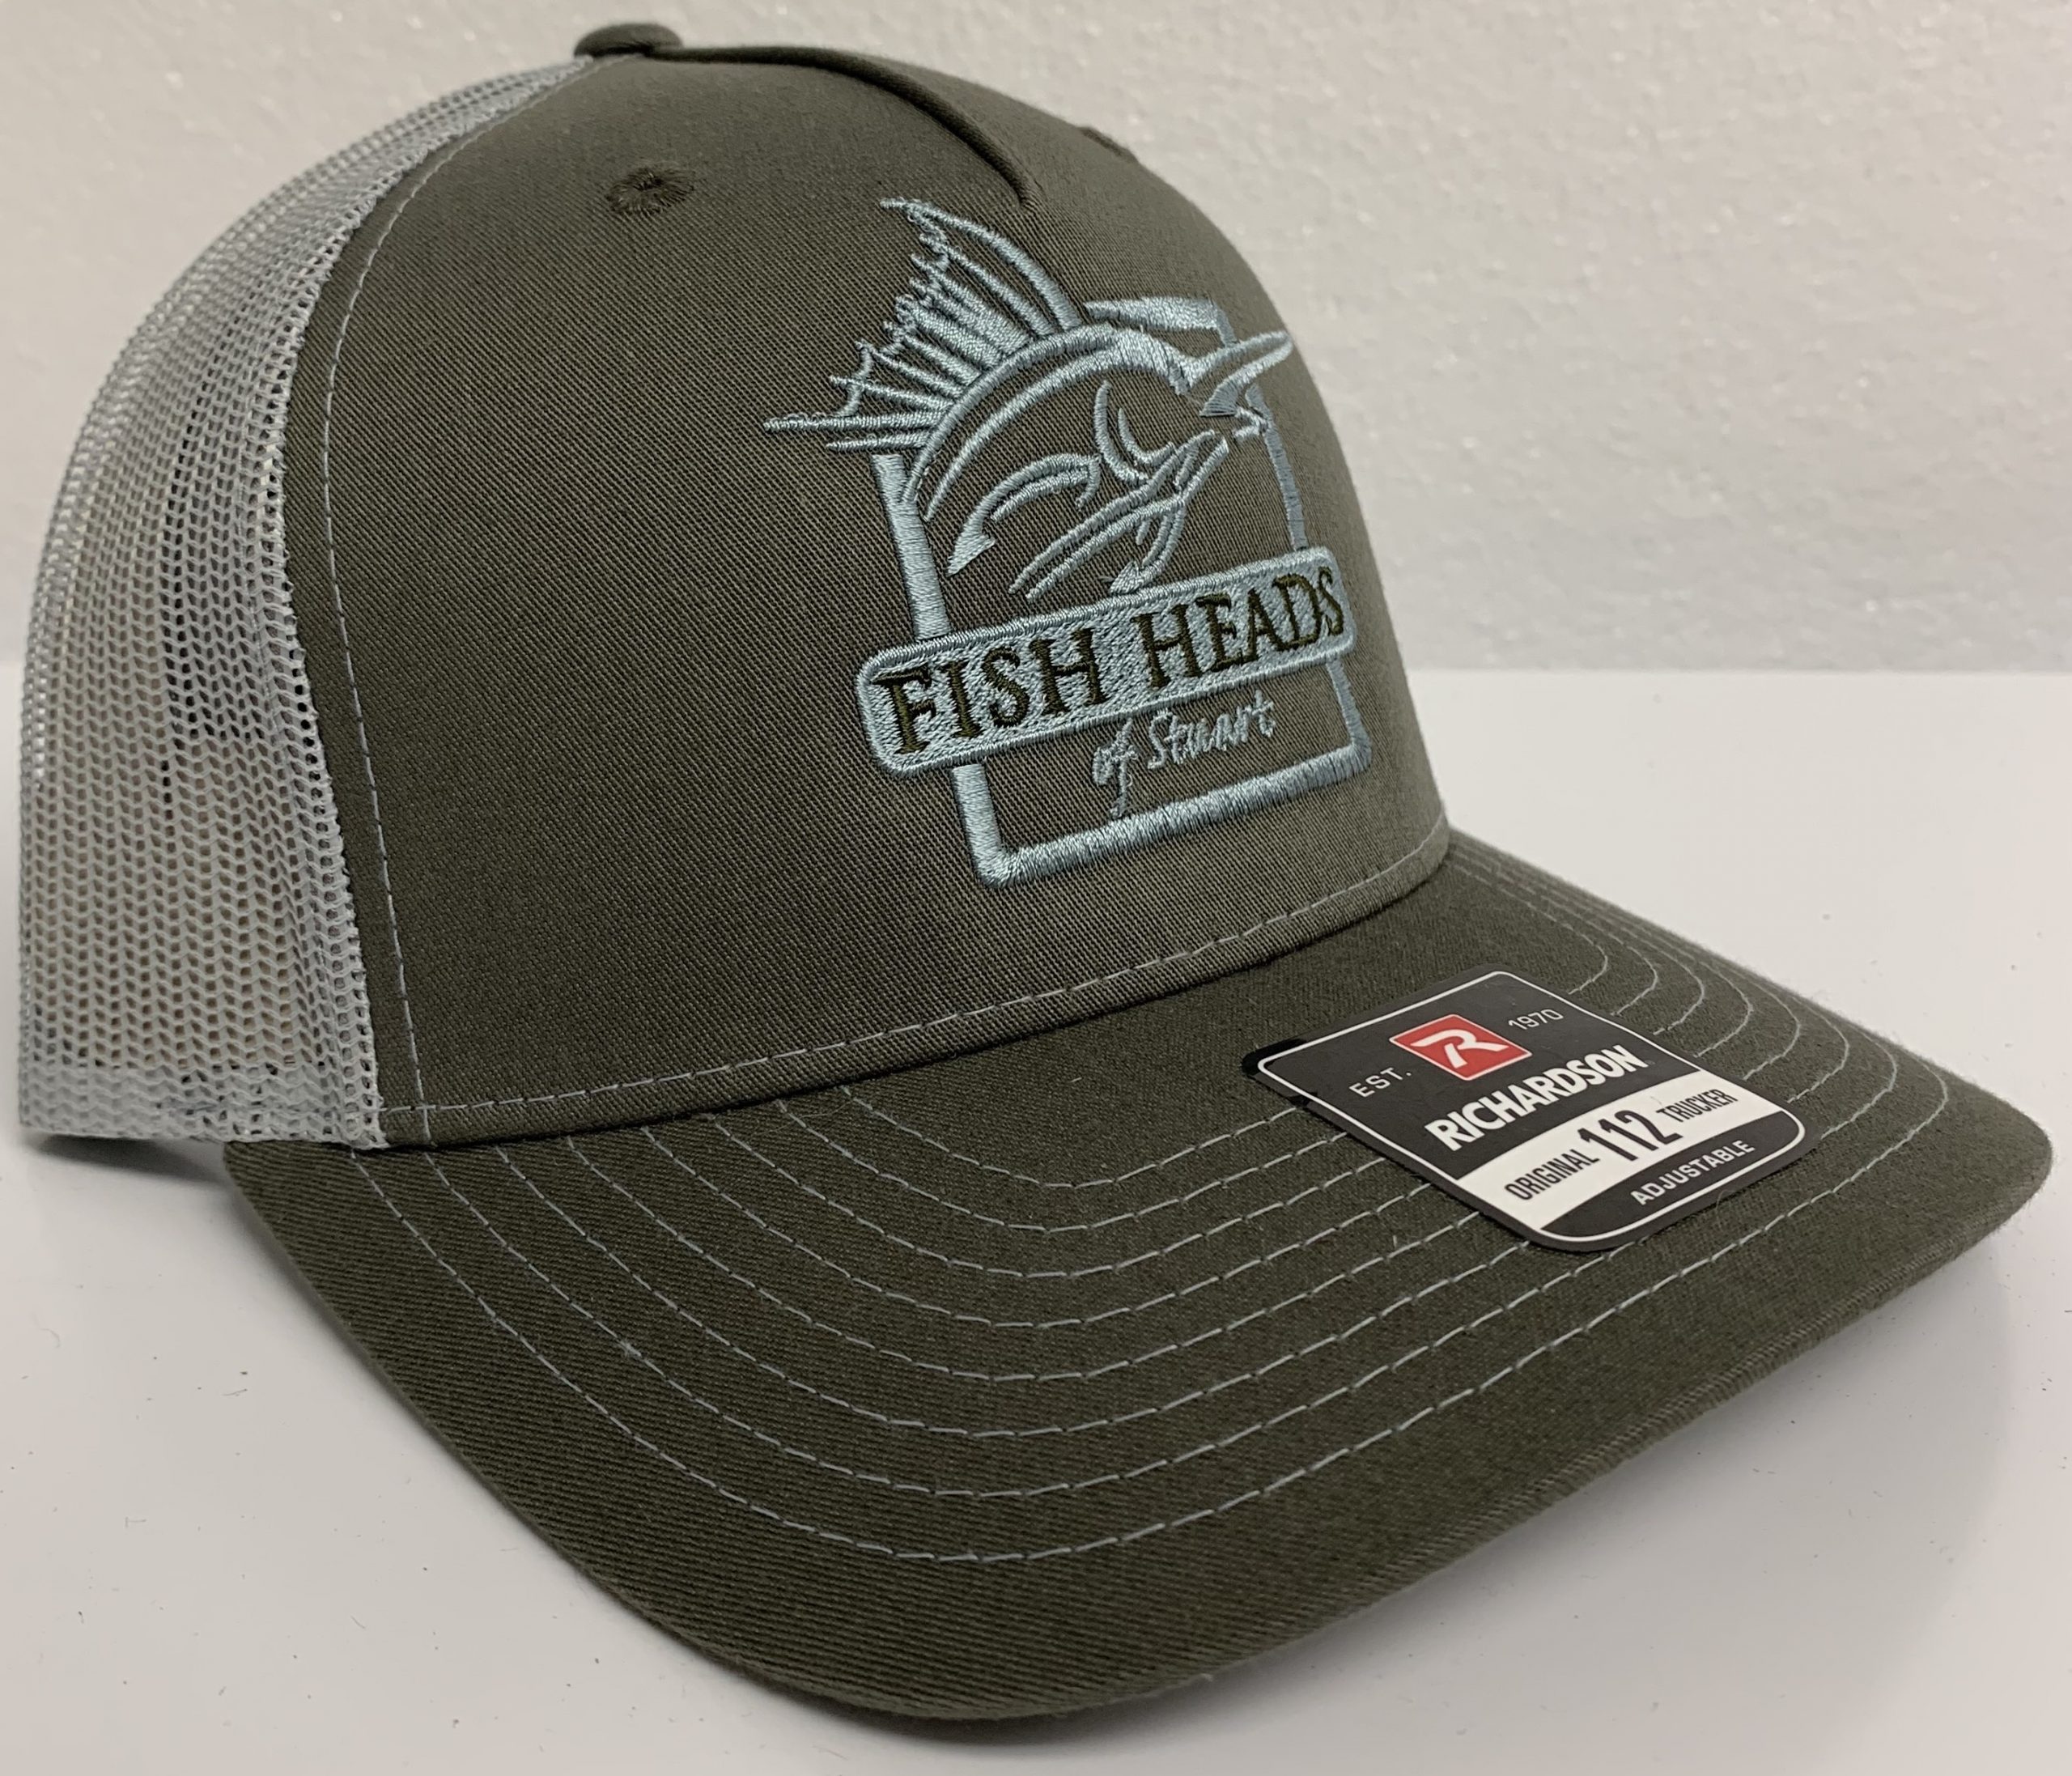 FishHeads Steelhead Trout Flexfit Snapback Trucker Hat